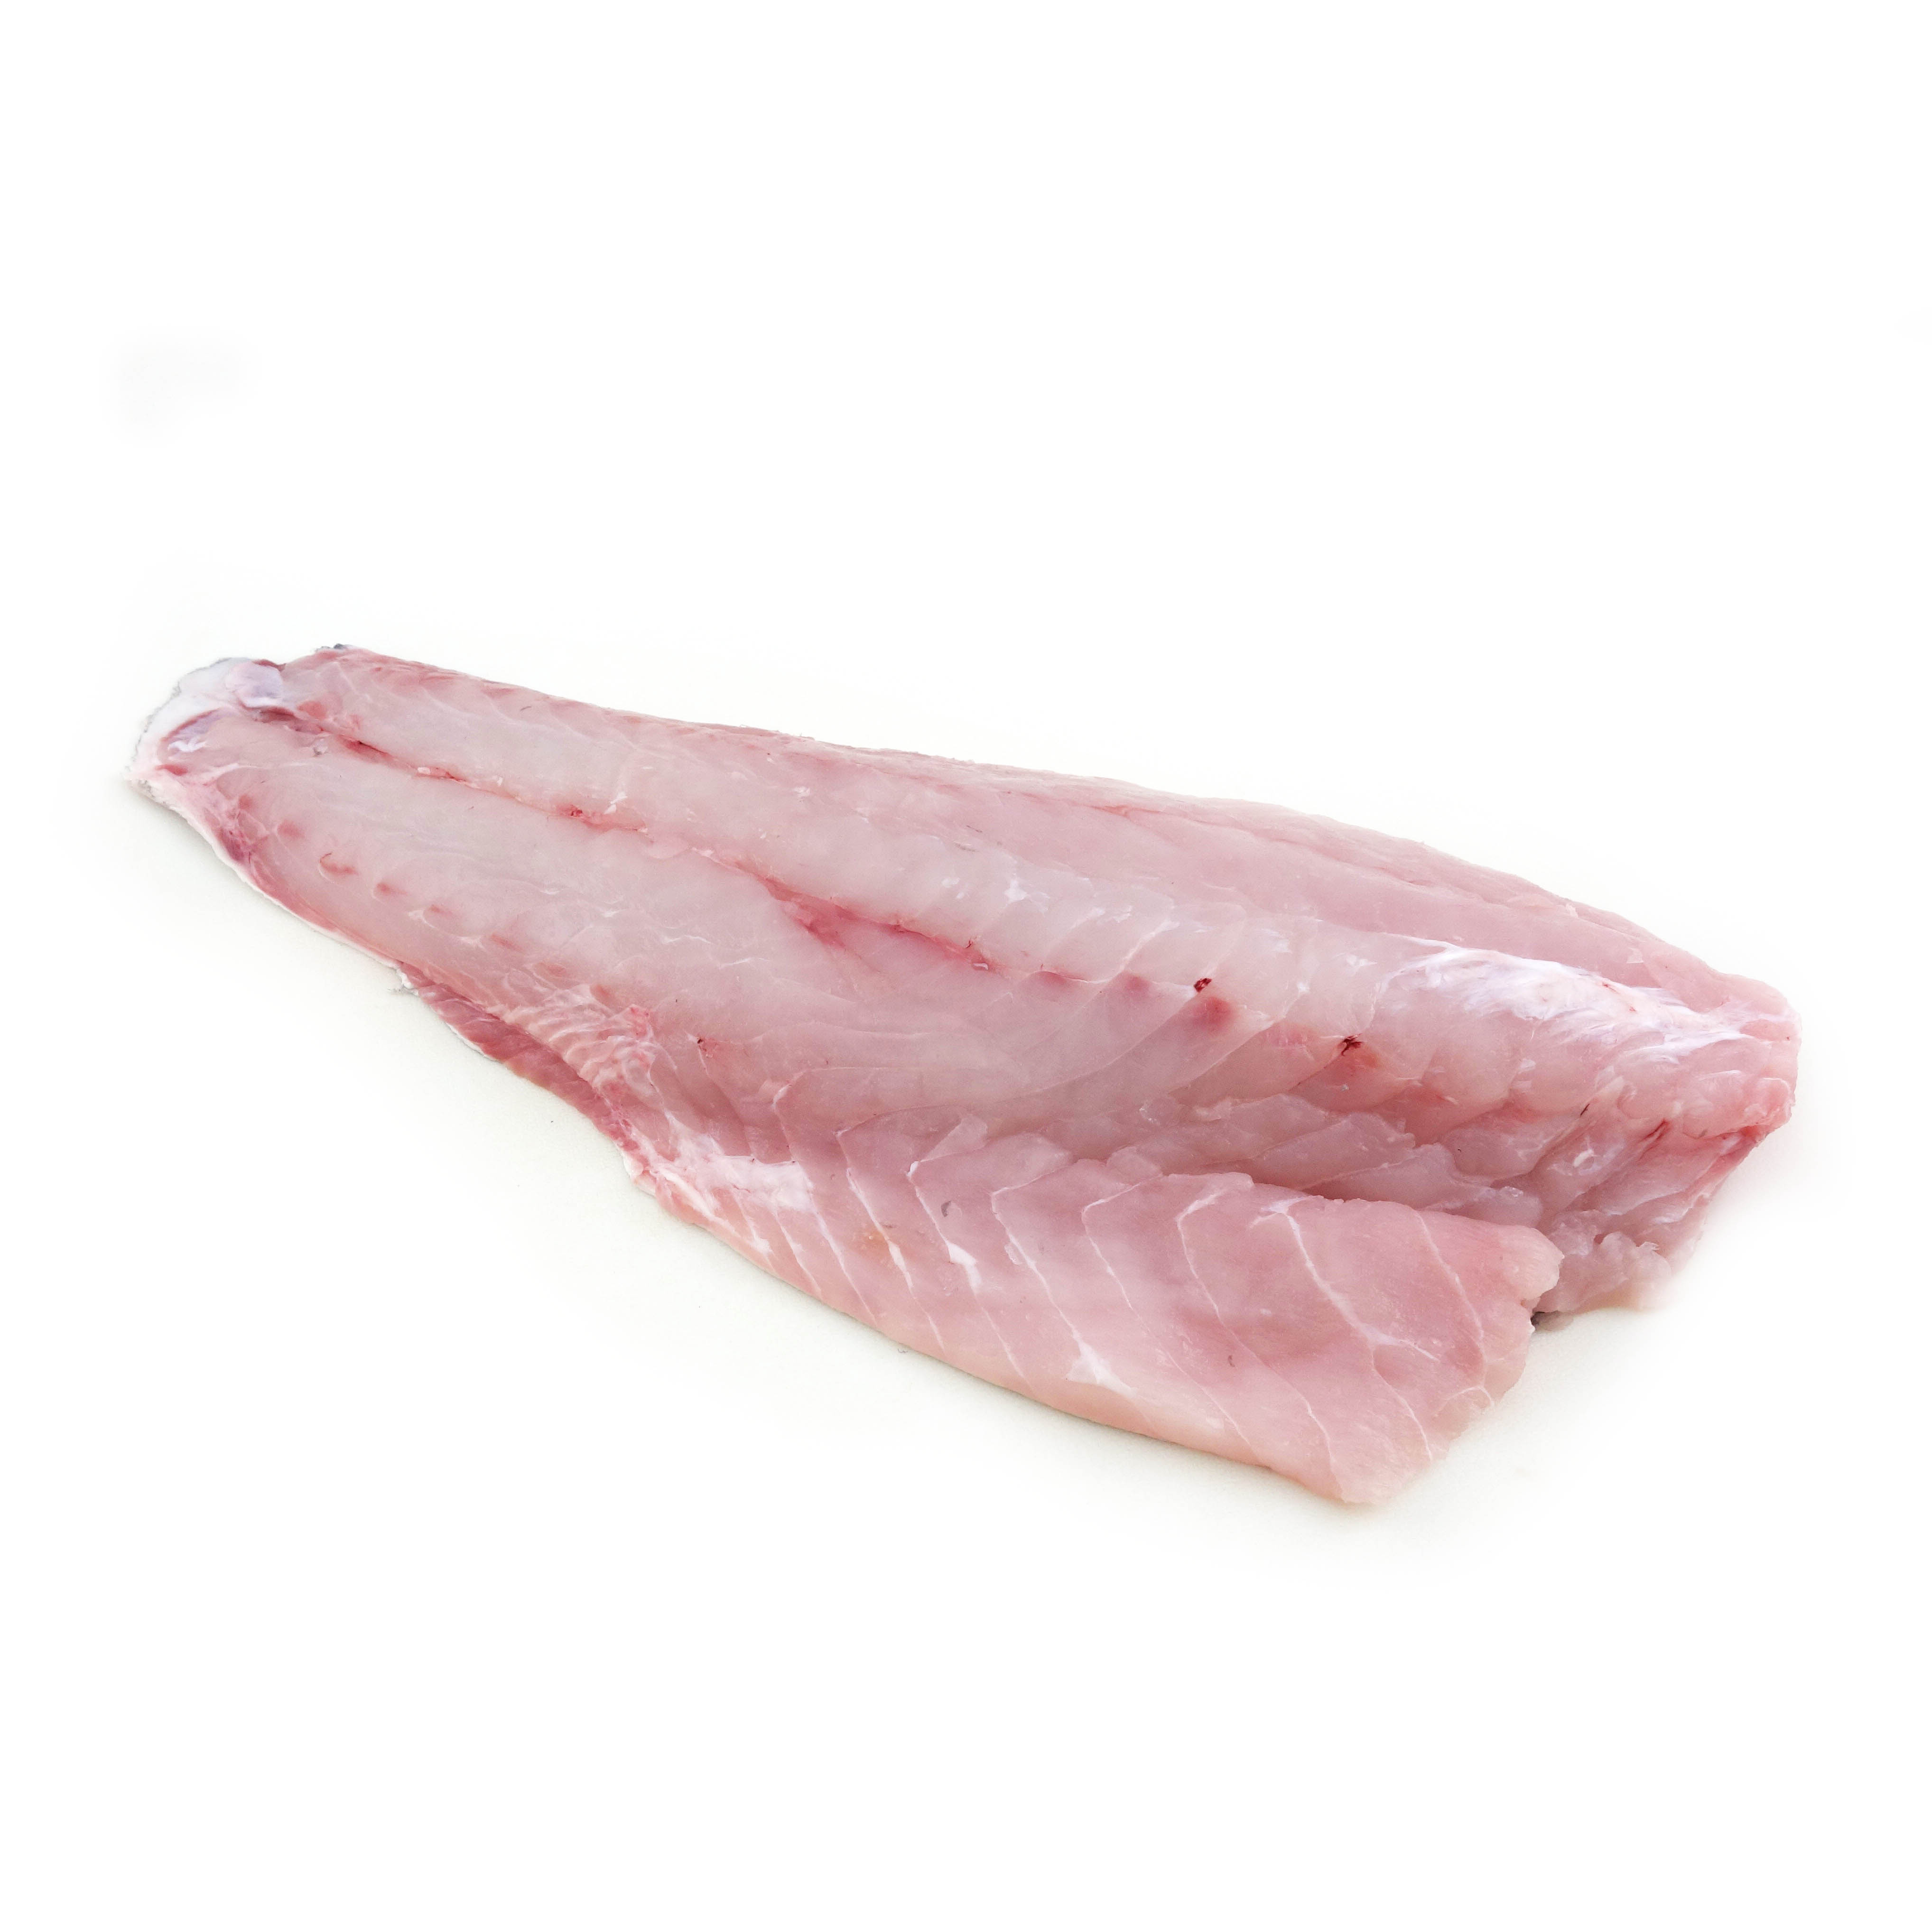 急凍紐西蘭野生捕獲石斑魚柳 - Groper (Seabass)200克*